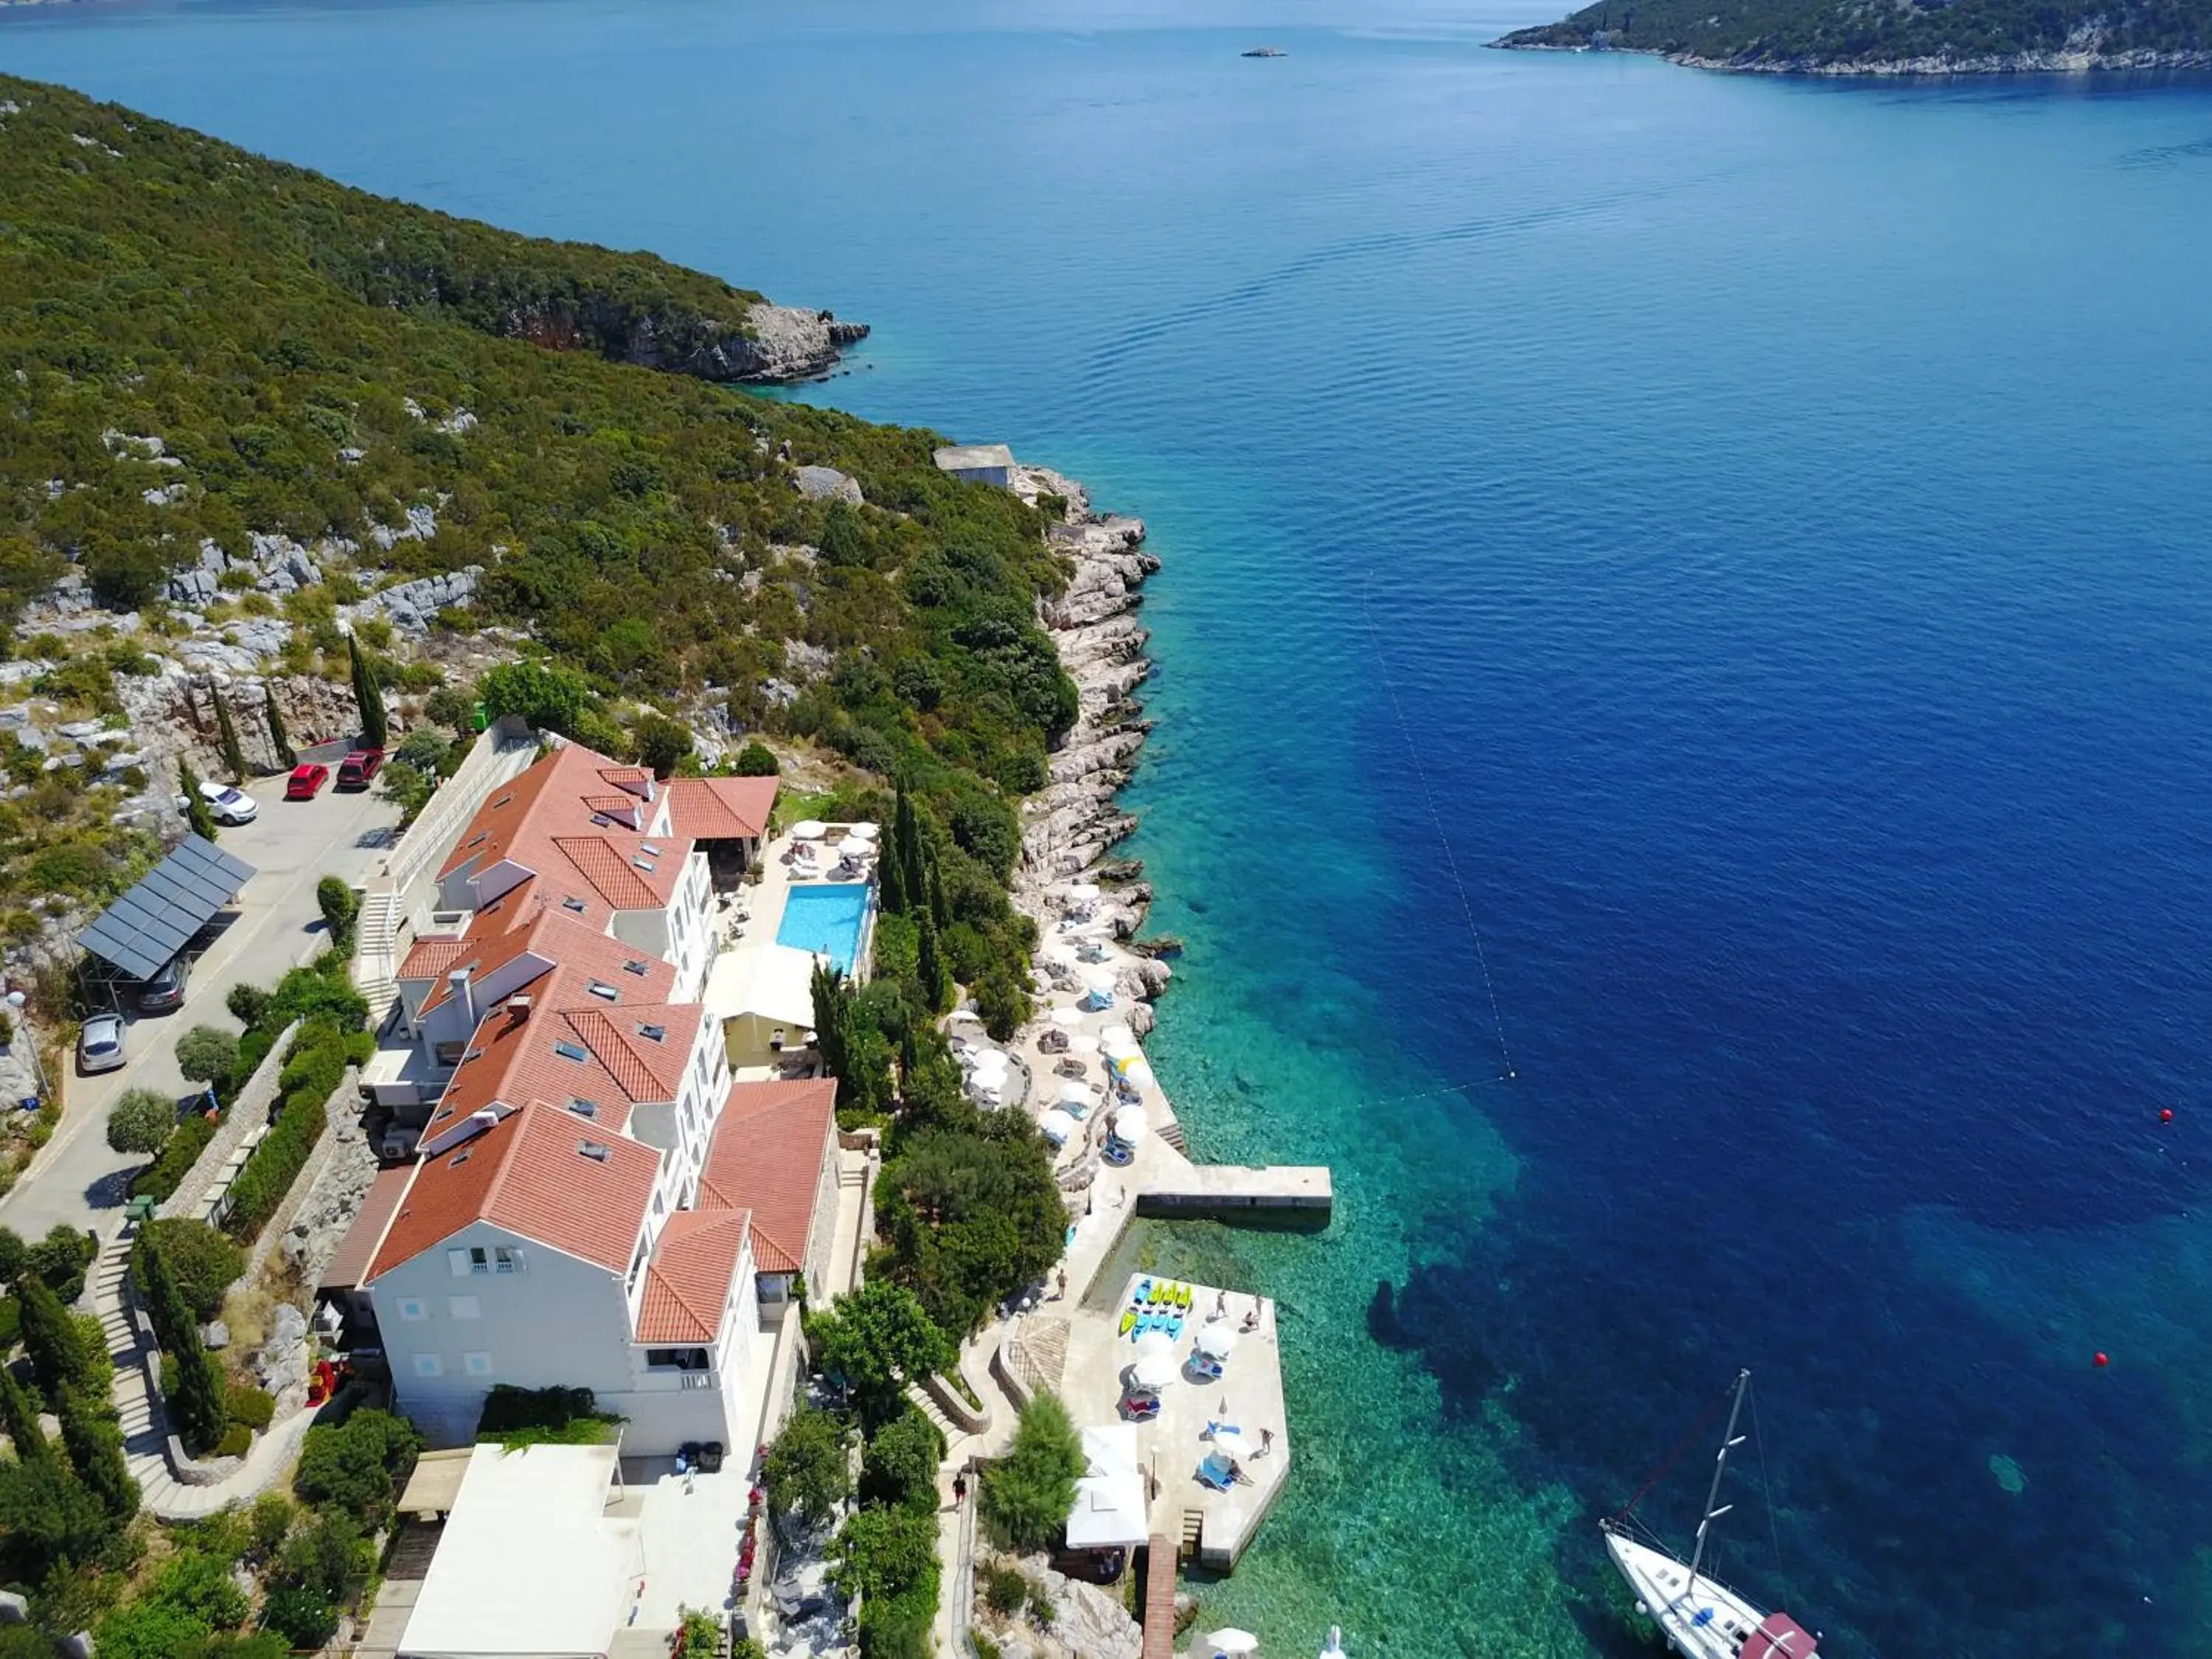 Spring, Bird's-eye View in Hotel Bozica Dubrovnik Islands